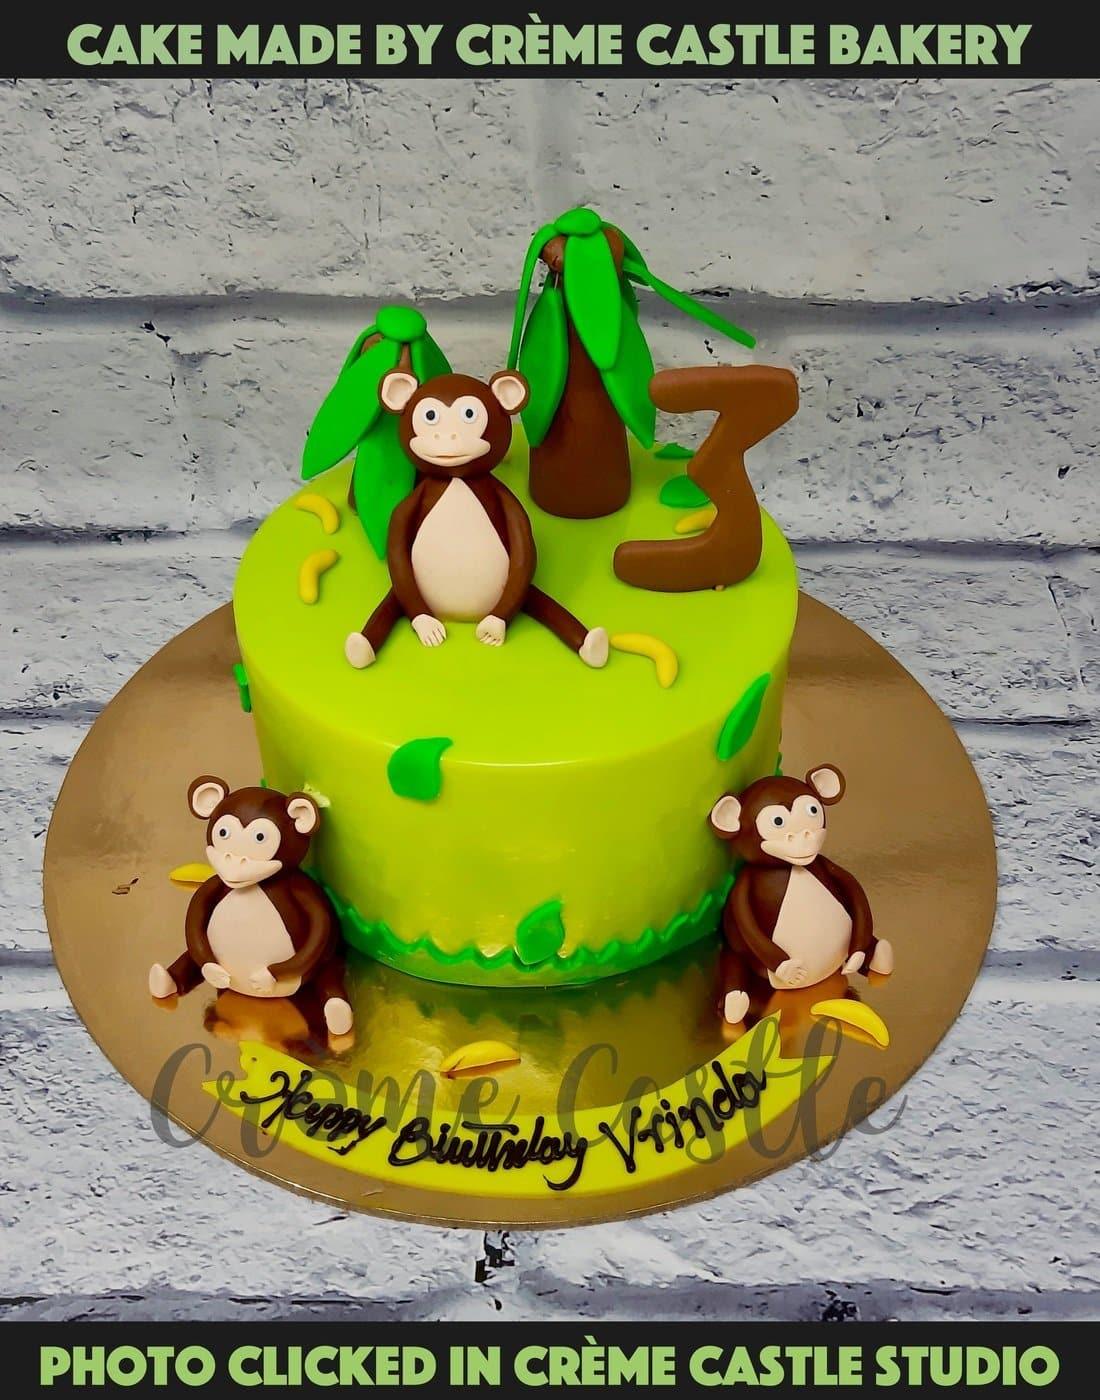 How to Make A Monkey Cake design | Fun Cake Design | #Thecakeshop - YouTube